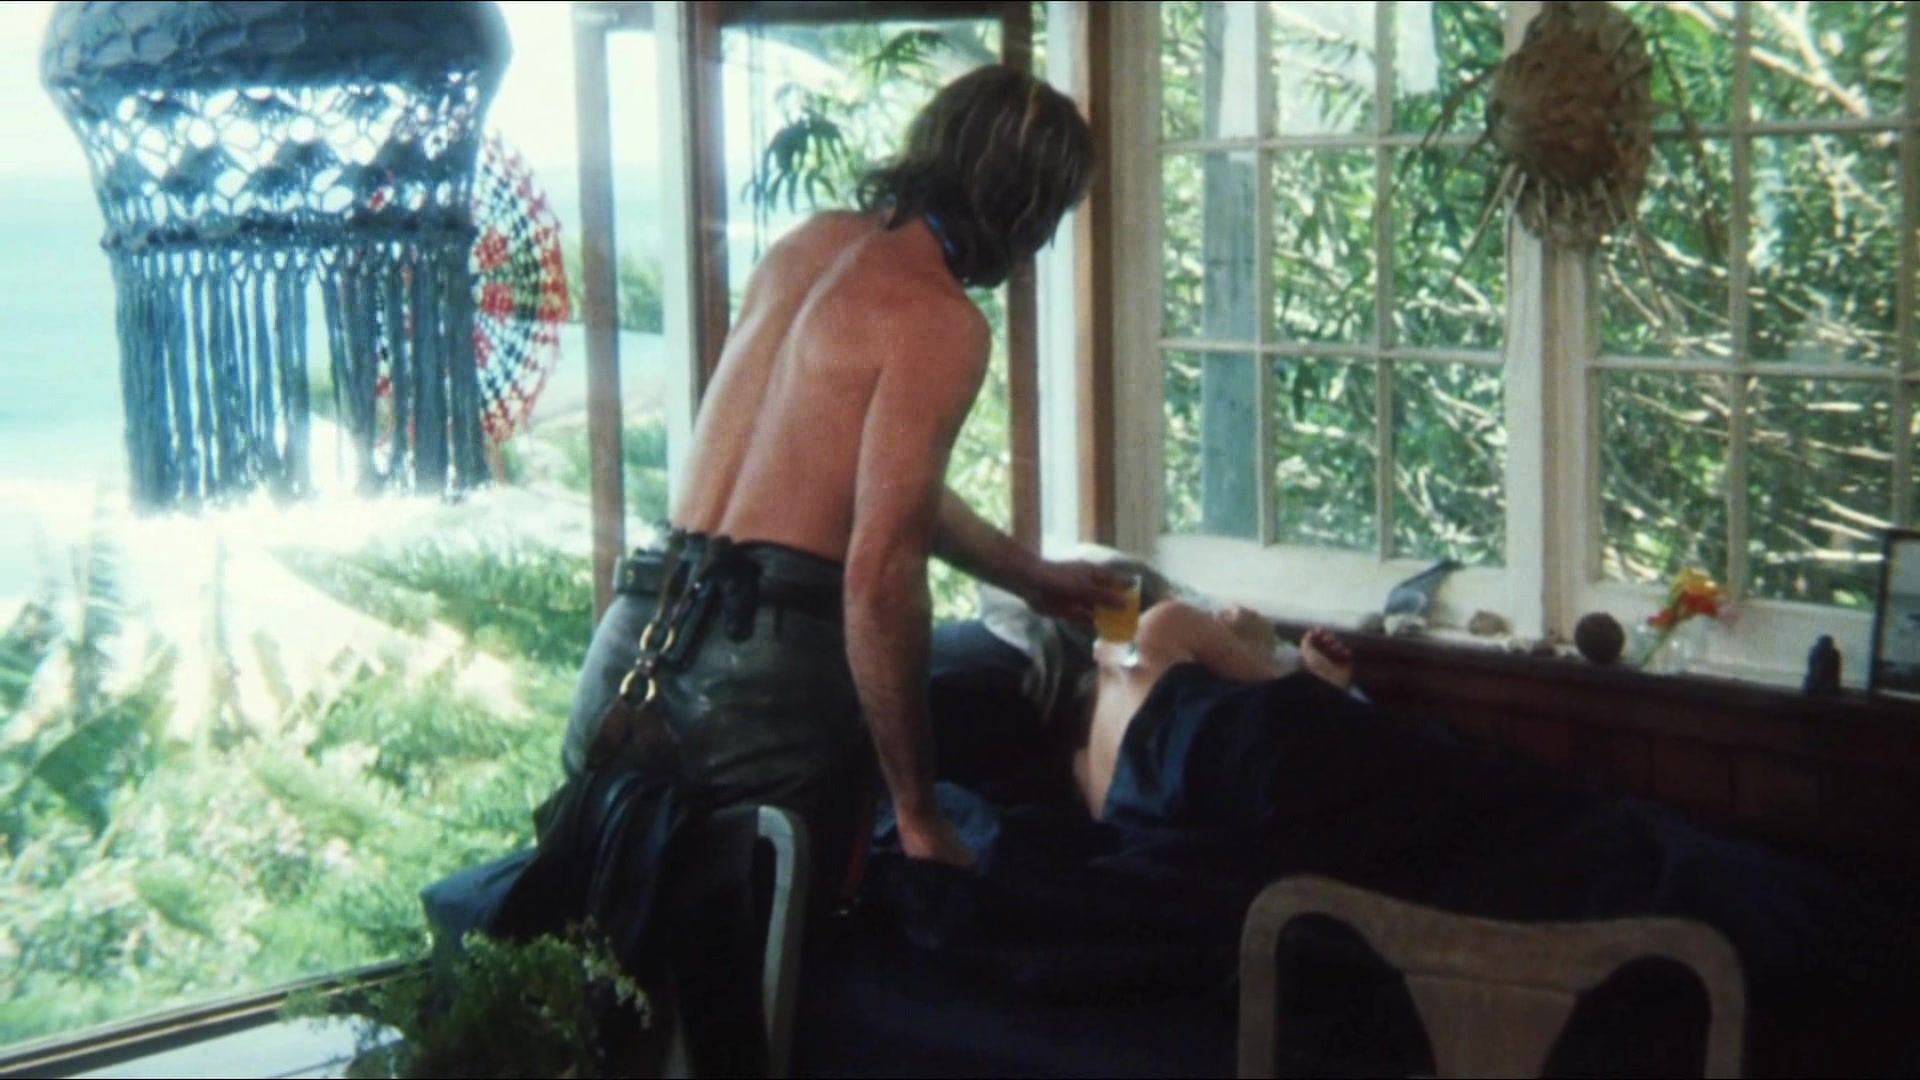 Shaking Classic Erotic Film "Stone" (1974) BlogUpforit